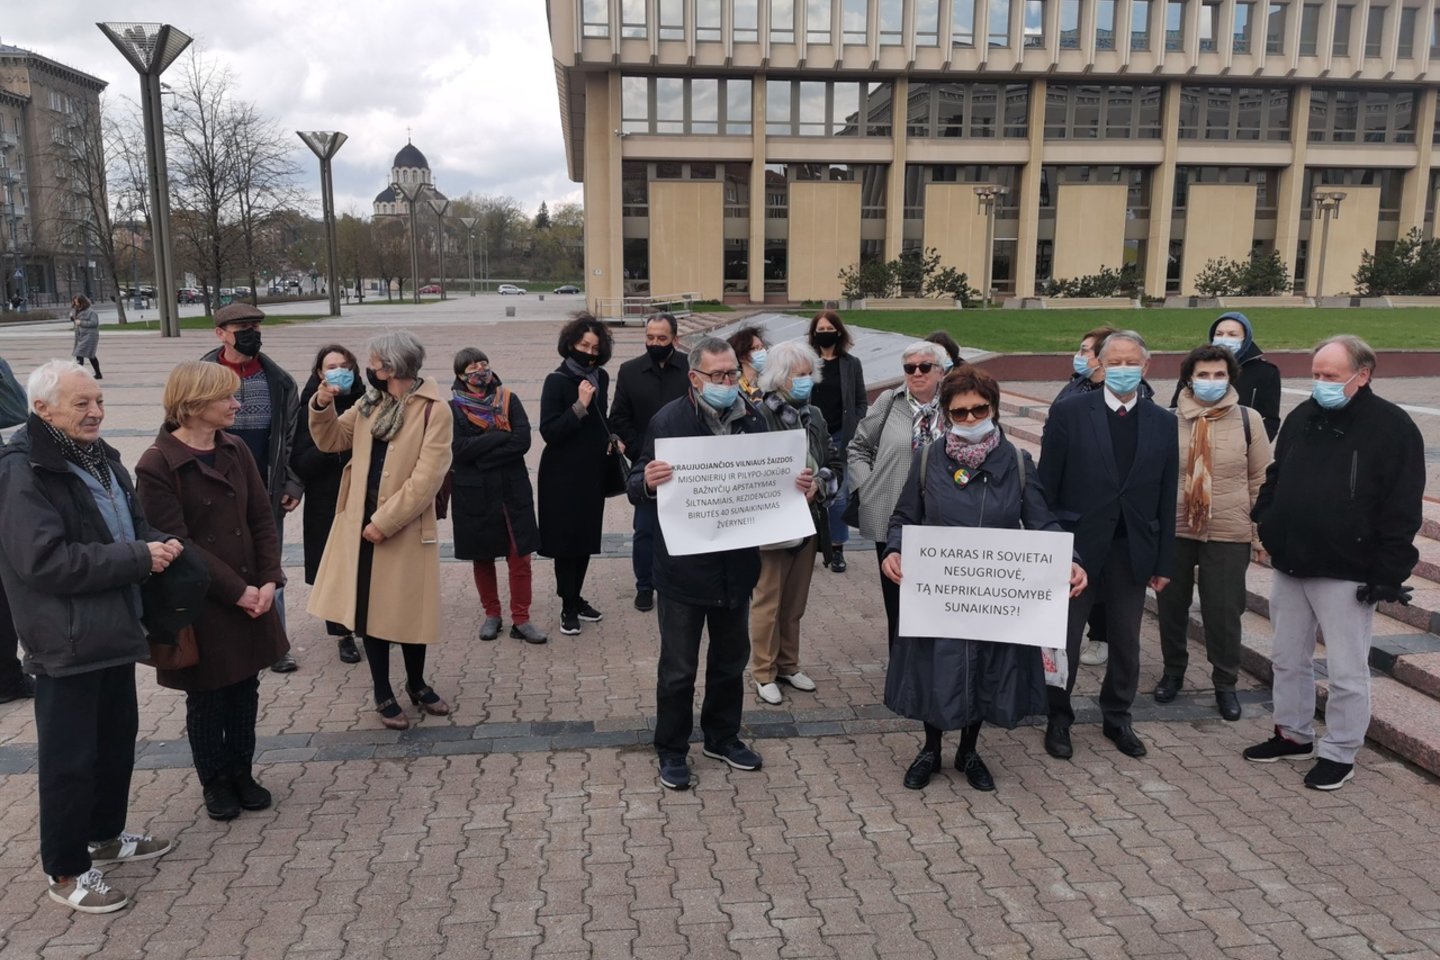 Nepriklausomybės aikštėje prie Seimo vyko paveldo laidotuvės su varžytynių elementais – protesto akcija.<br>R.Danisevičiaus nuotr.